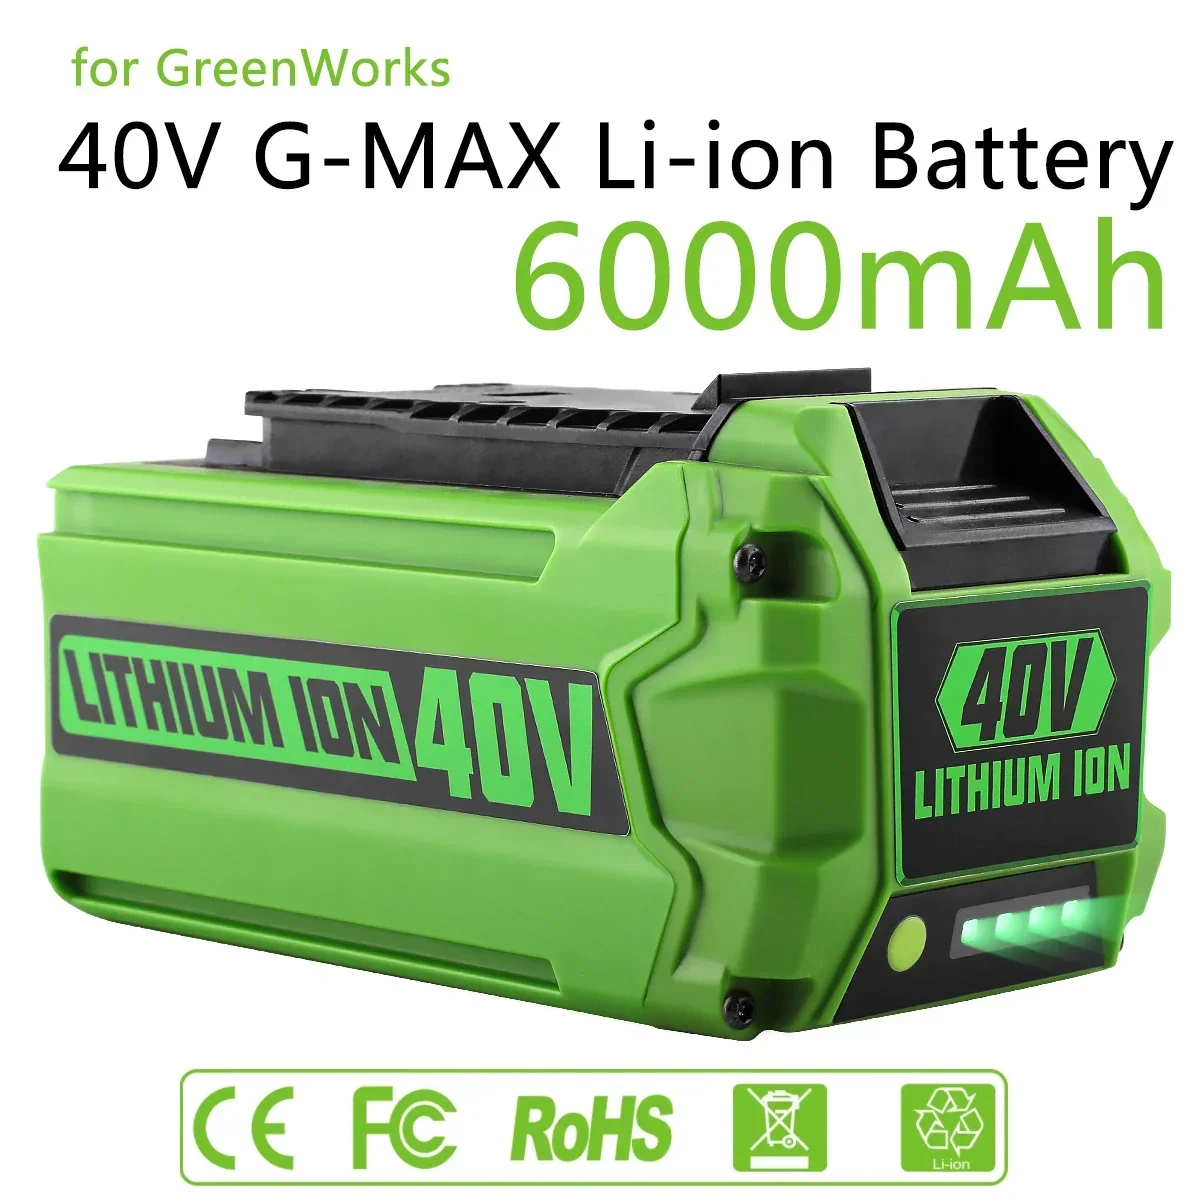 per-batterie-greenworks-40v-6ah-greenworks-g-max-batteria-agli-ioni-di-litio-produttore-batteria-di-ricambio-per-utensili-elettrici-tosaerba